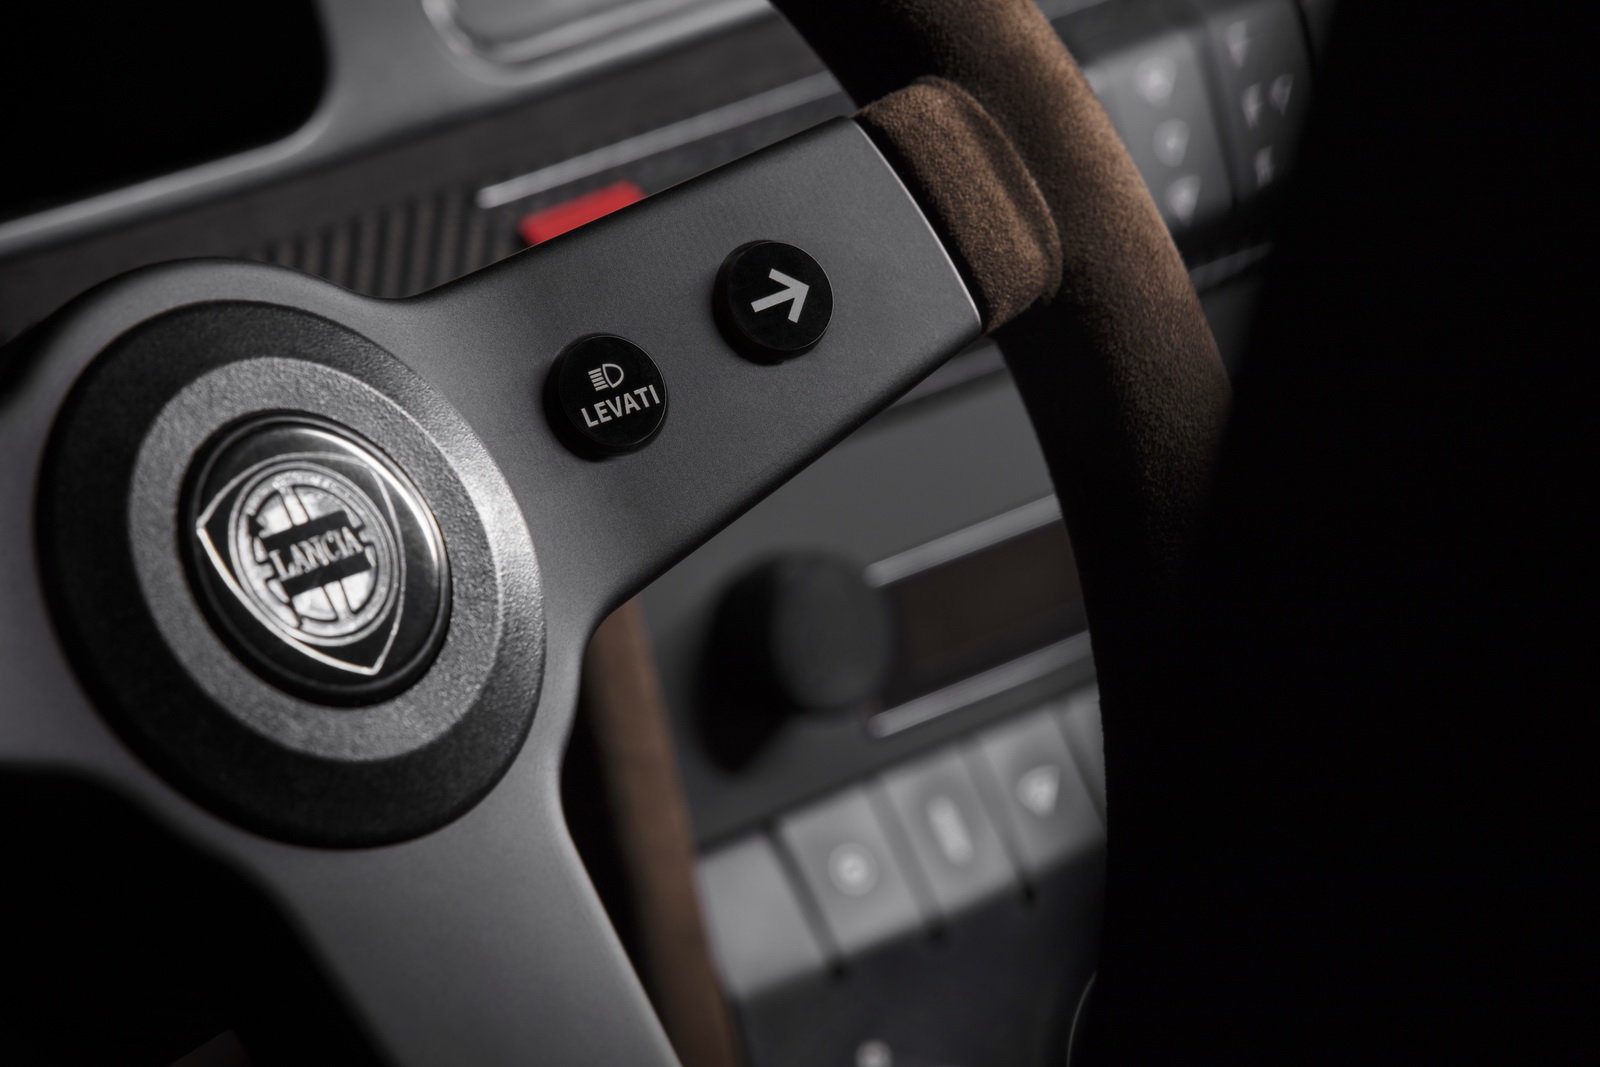 Levati button on Lancia Delta Integrale Futurista steering wheel